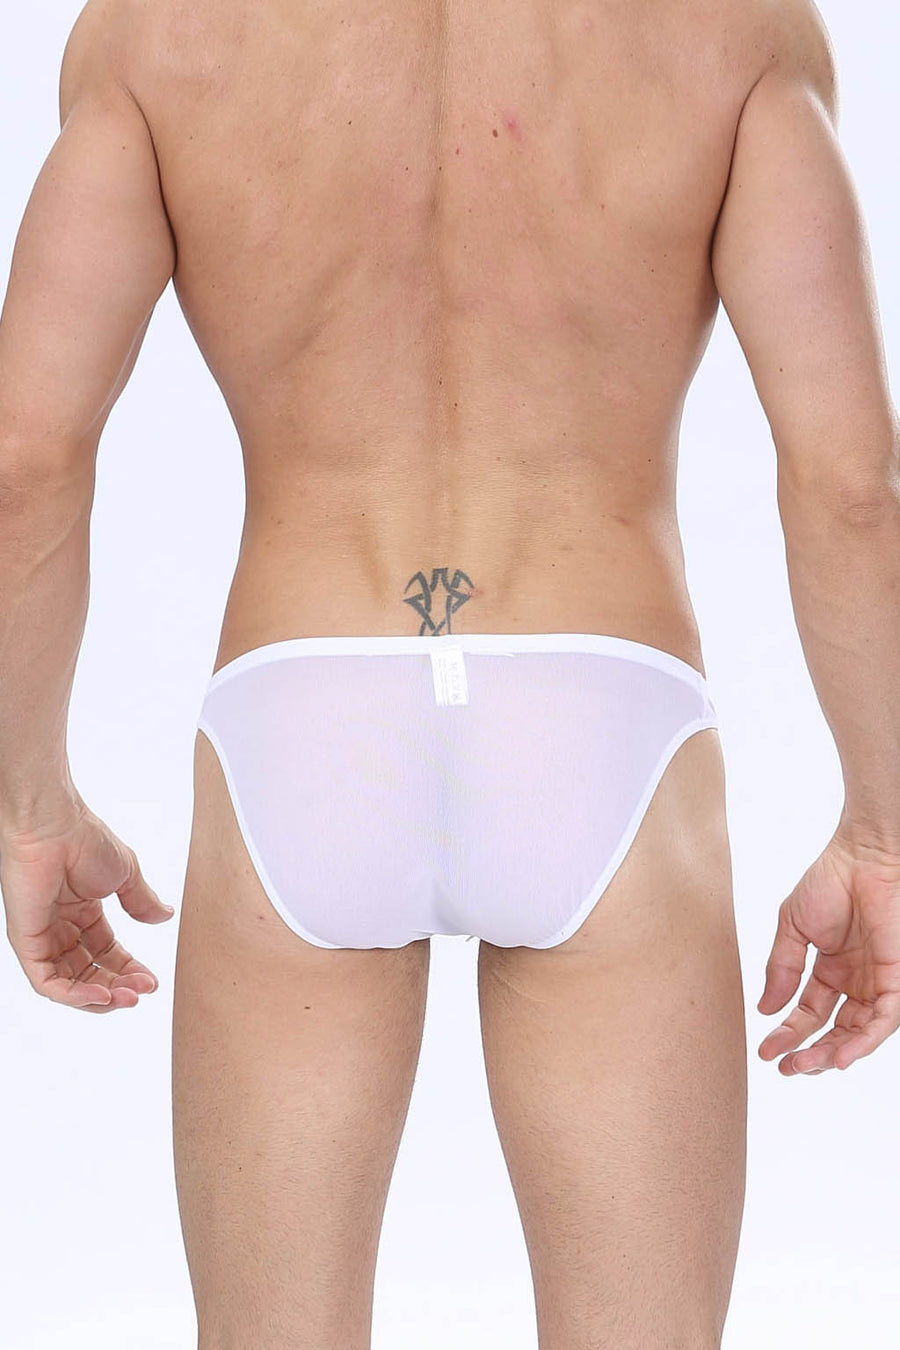 Manview Mens Sheer Net Bikini Lowrise Pouch Underwear